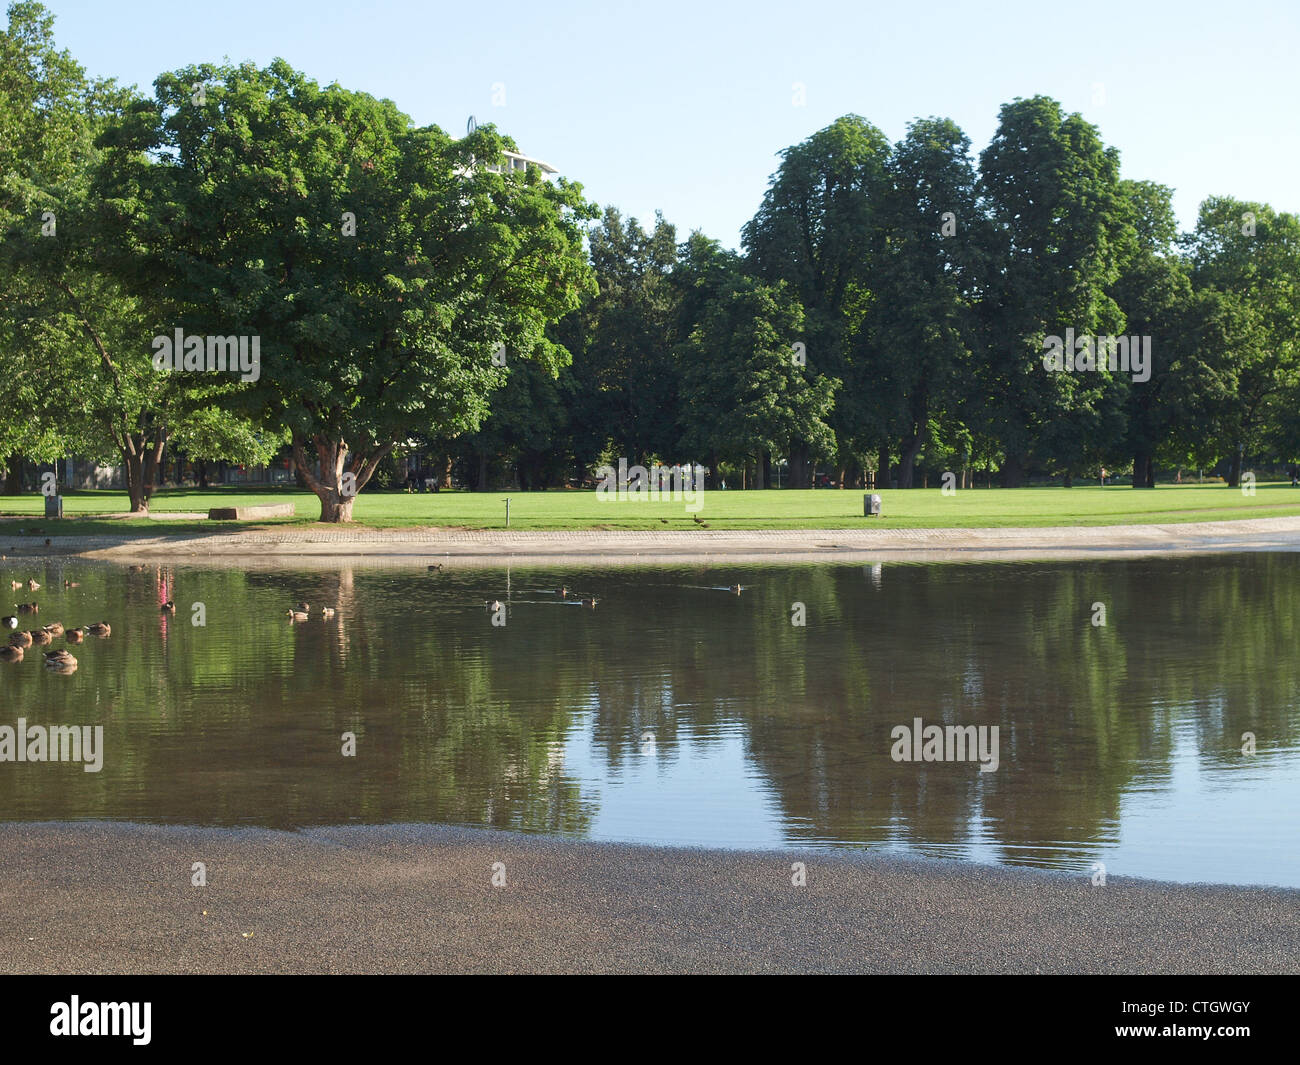 The Oberer Schlossgarten park in Stuttgart, Germany Stock Photo